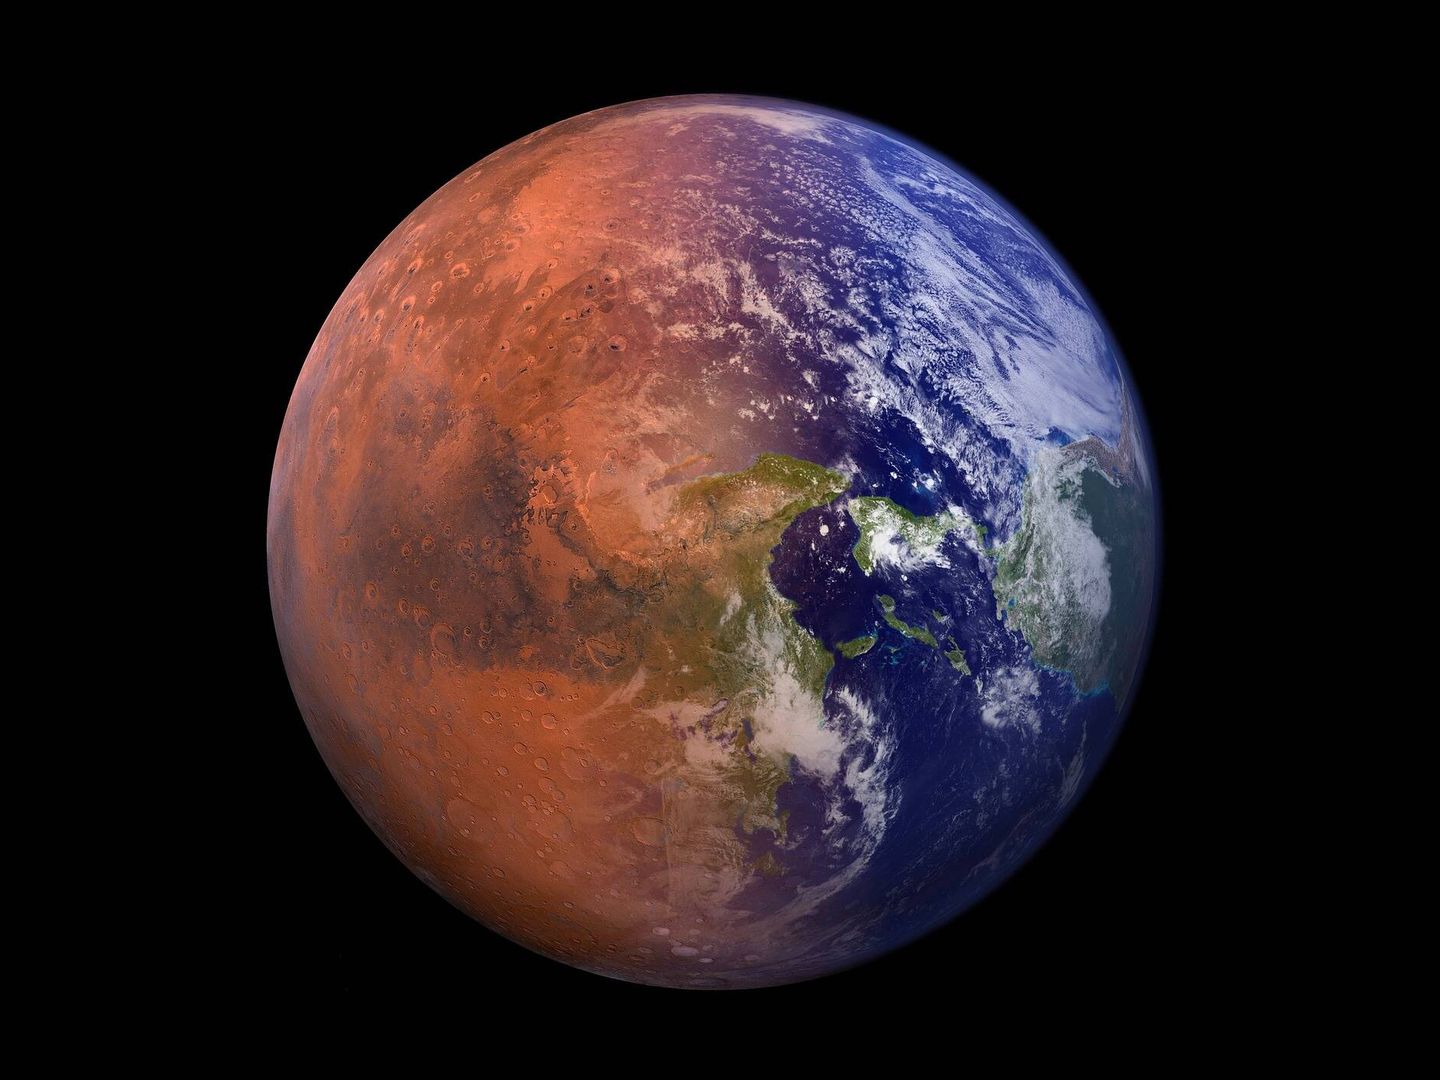 Green aseguran que podemos volver a convertir Marte en un planeta azul. (Pixabay)